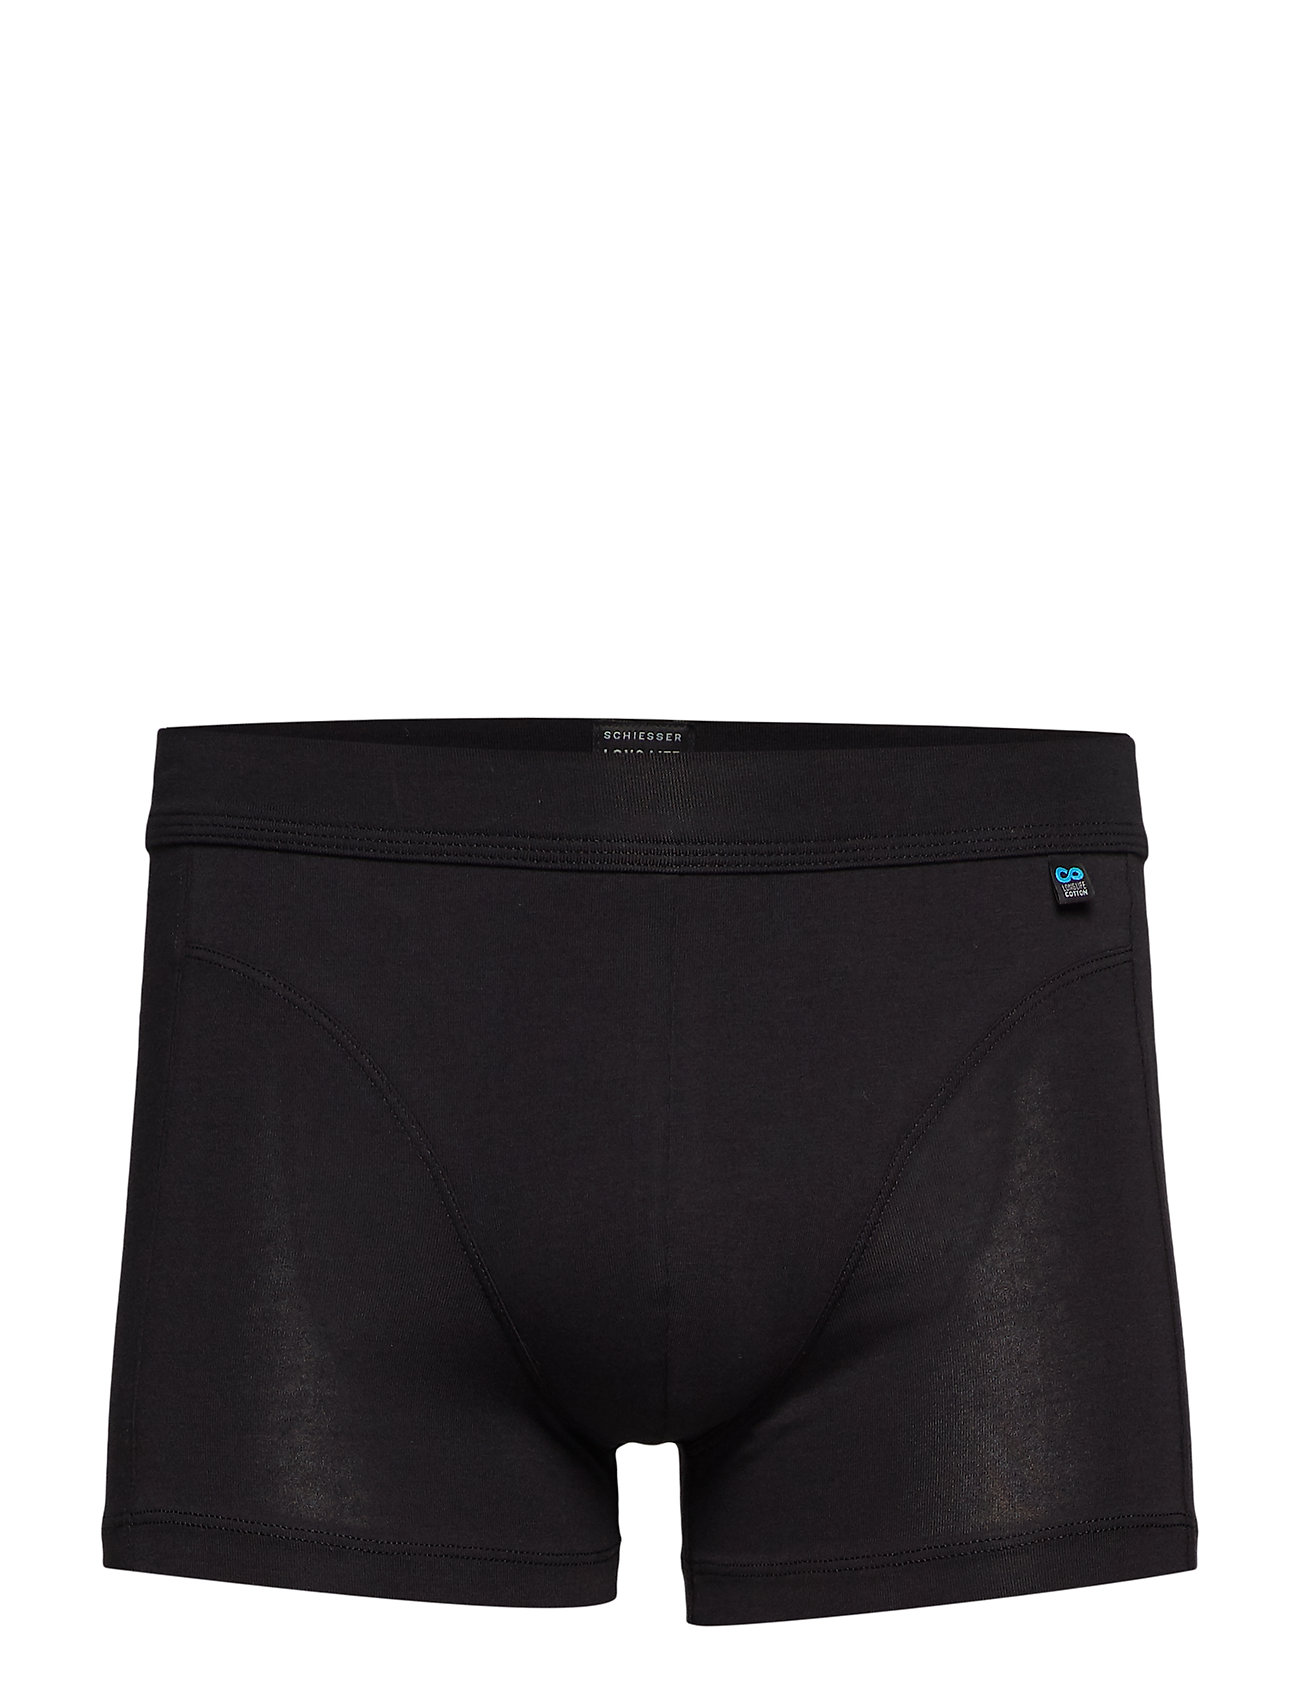 Schiesser Shorts – underwear – shop at Booztlet